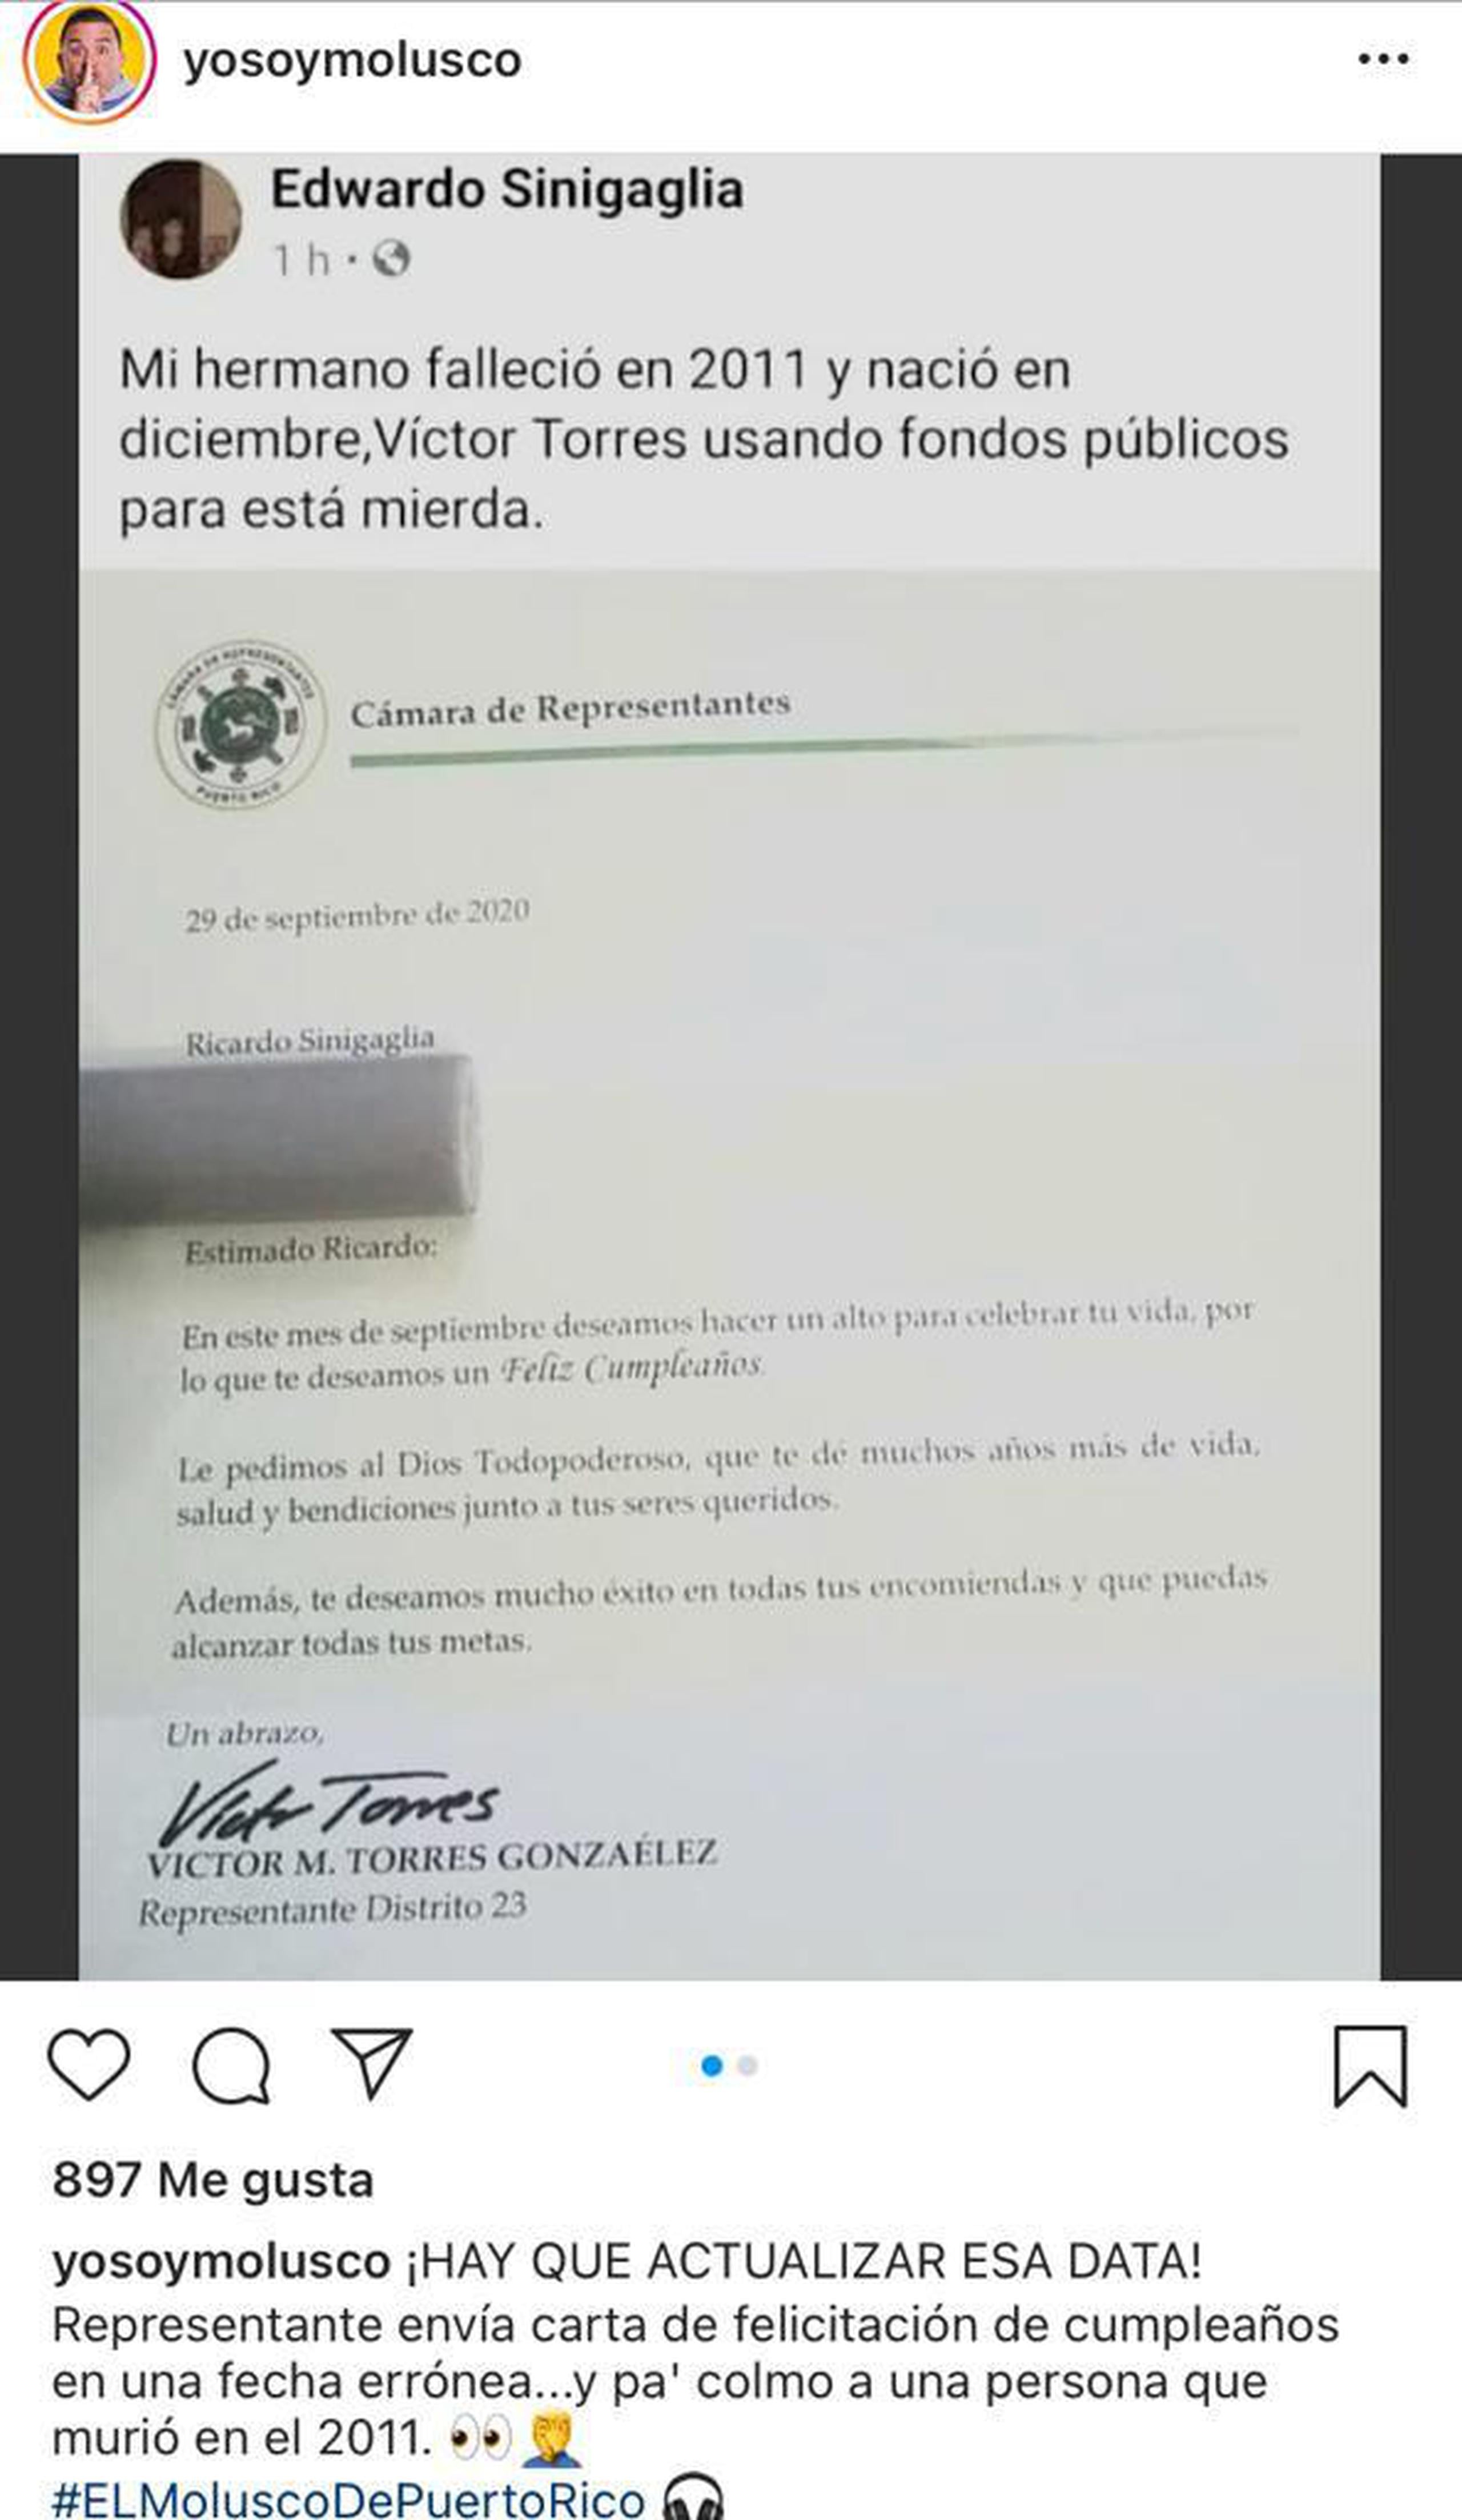 El representante Víctor Torres González aclaró la información que fue publicada sobre una felicitación que envió a un joven constituyente del Distrito 23, residente del municipio de Guayanilla.